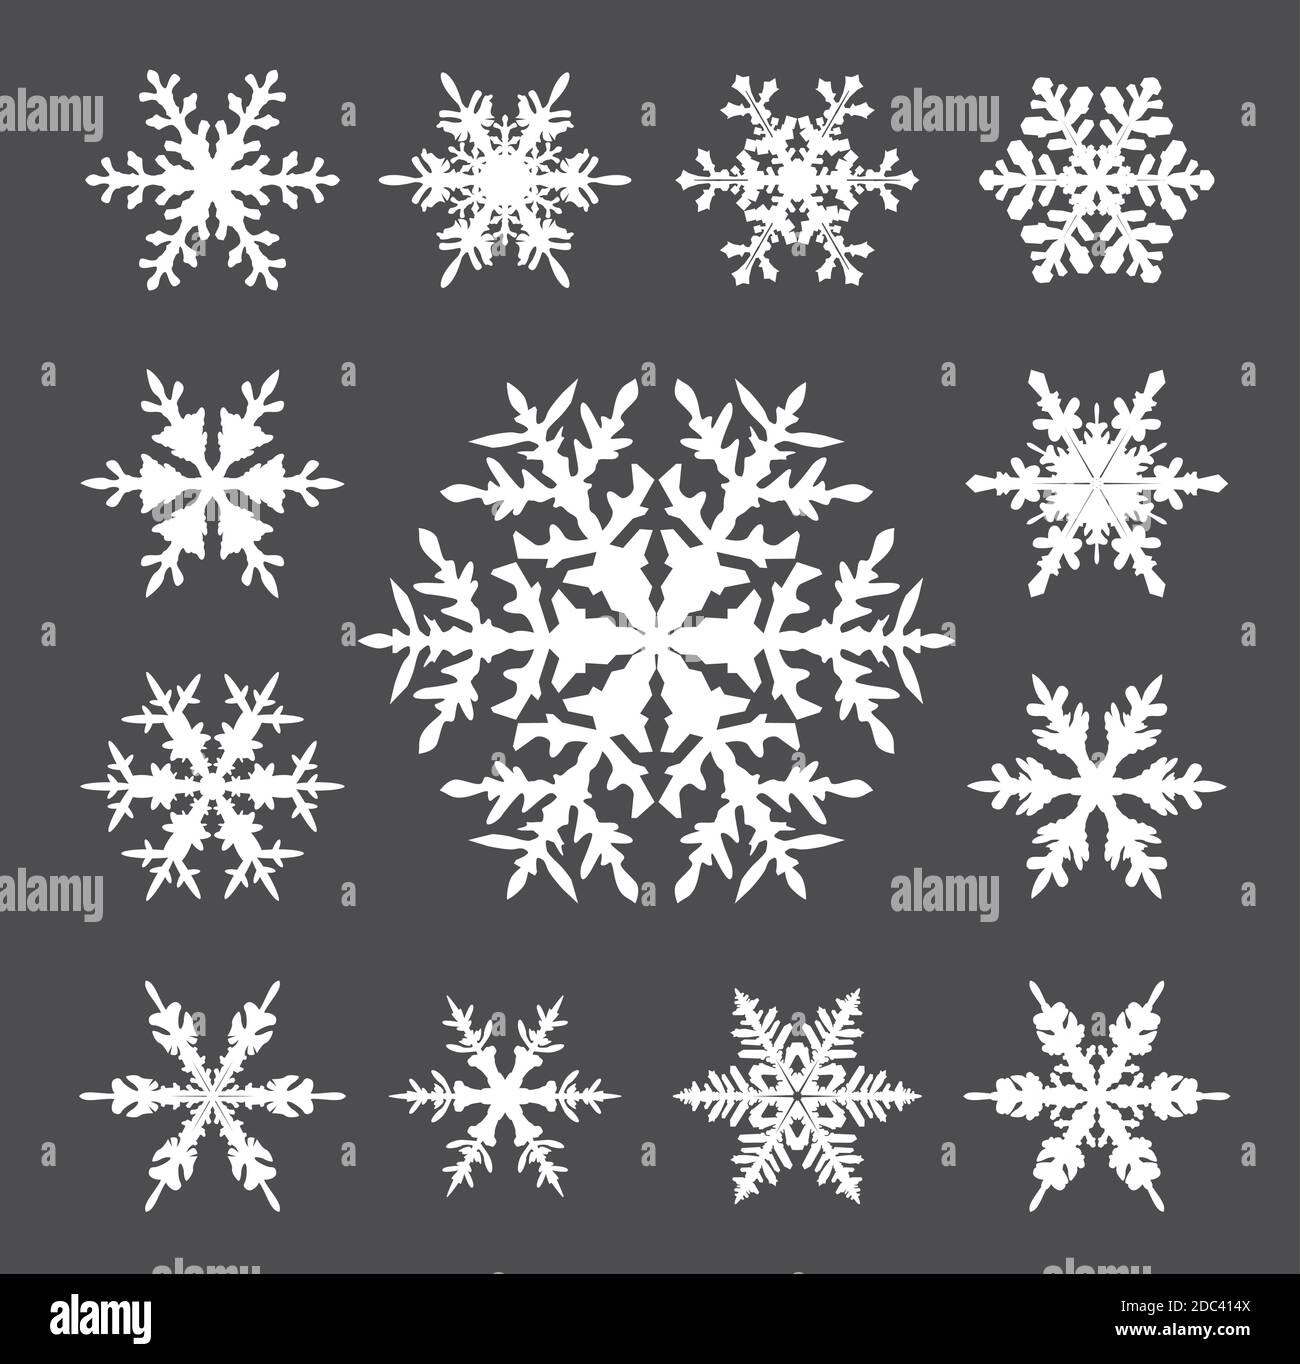 Sammlung von weißen Schneeflocken auf grauem Hintergrund. Vektor Illustration und Logo Design. Stock Vektor